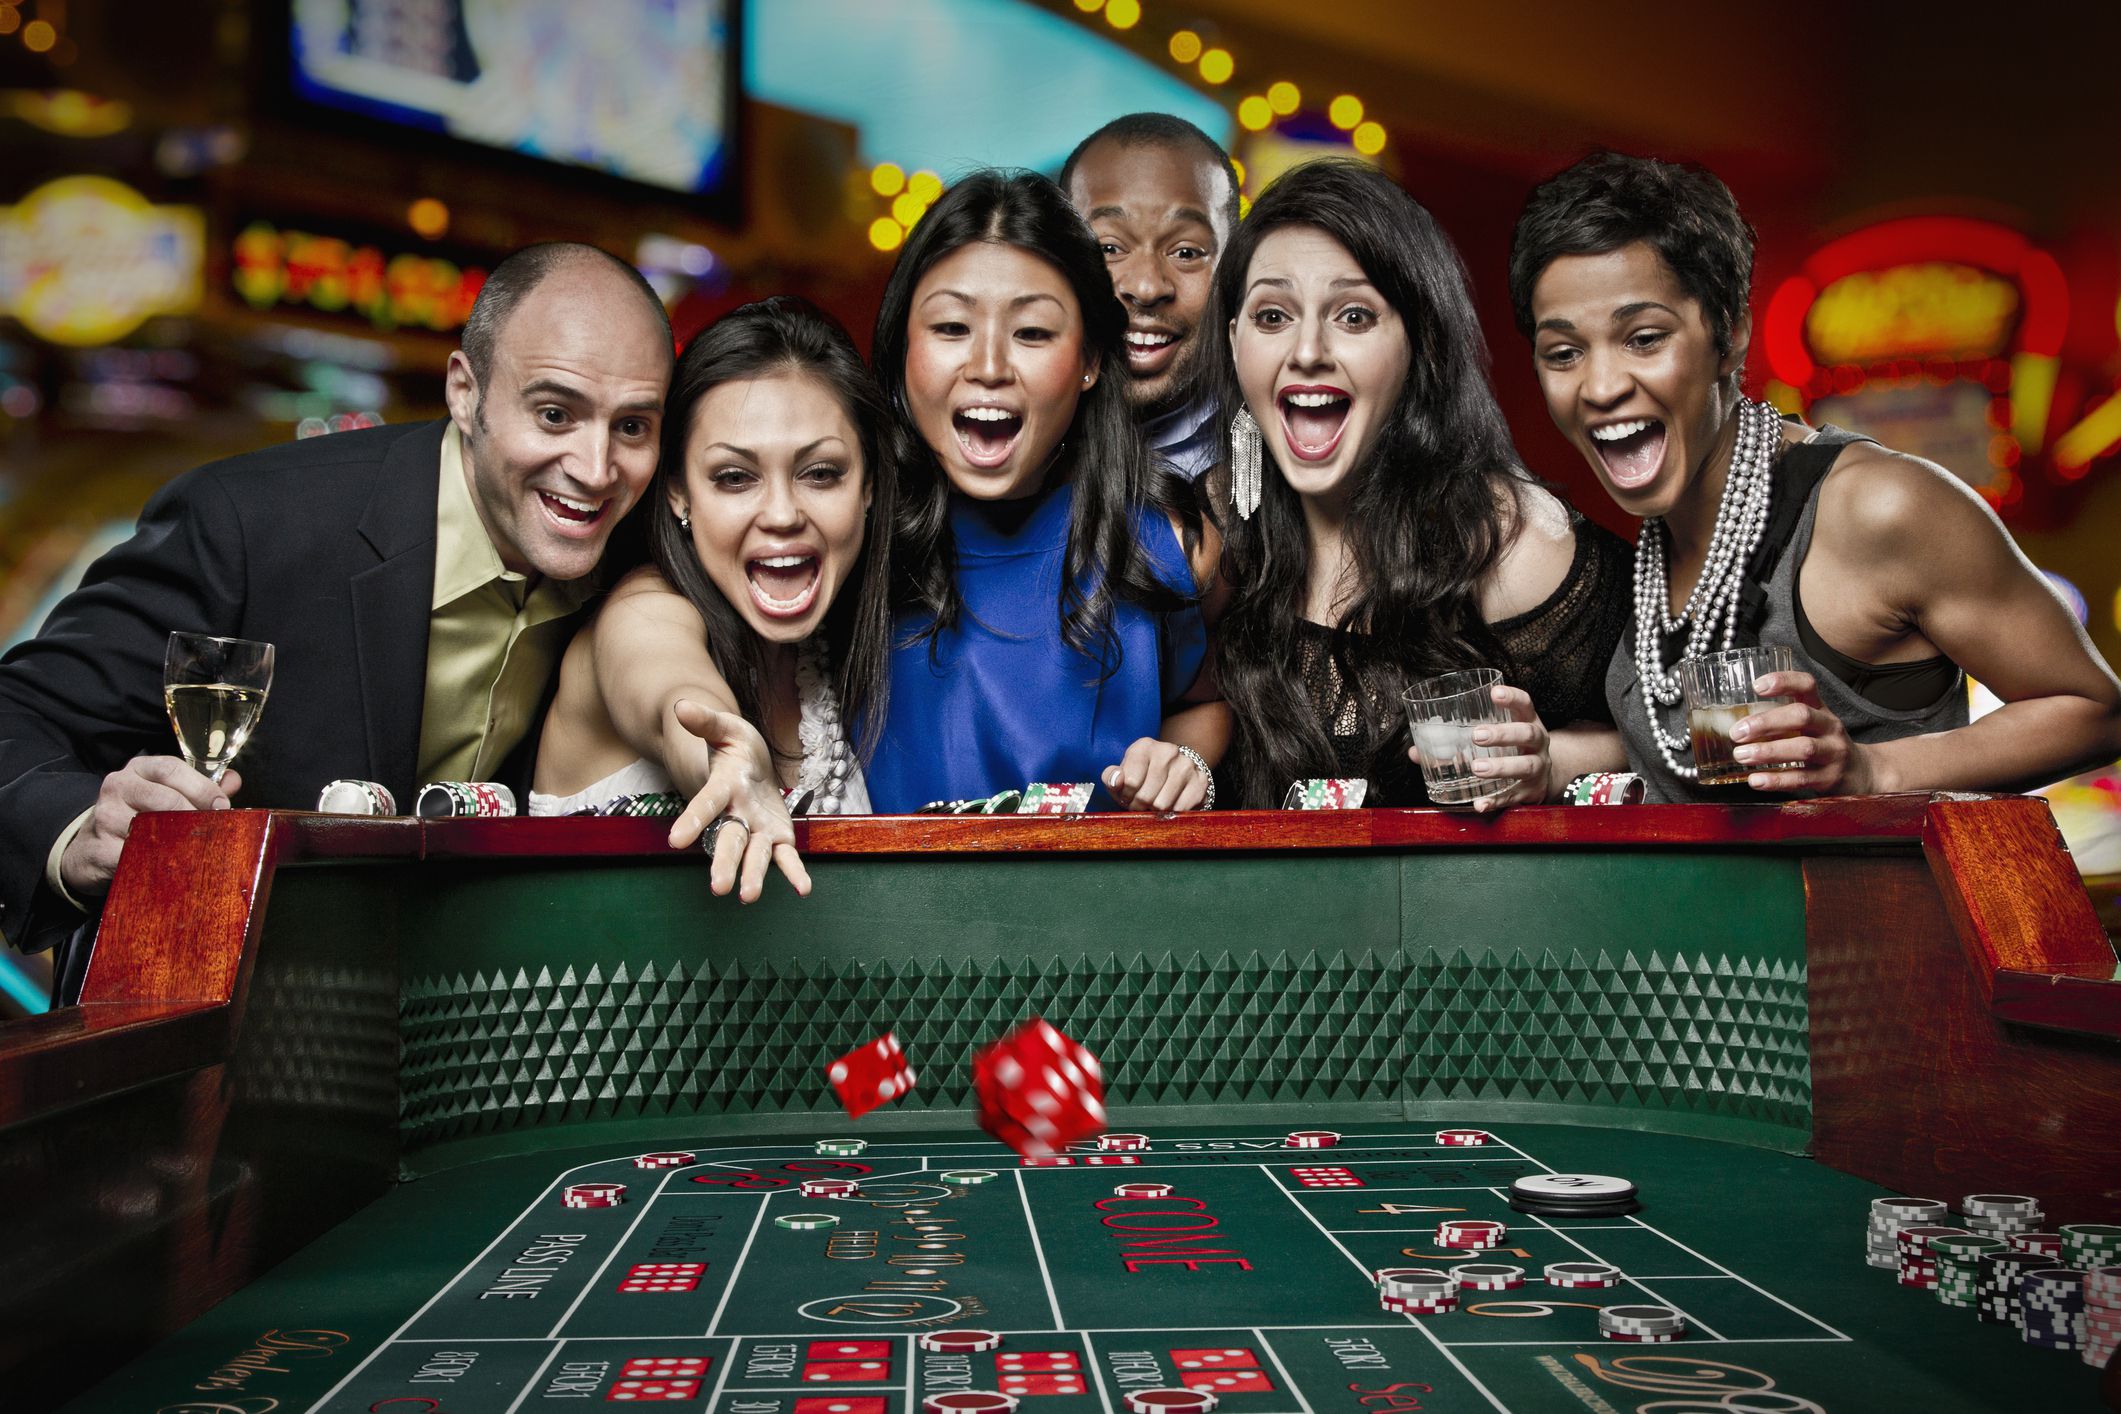 When the Gambling Casino Wants to Help You Bet – Beware!